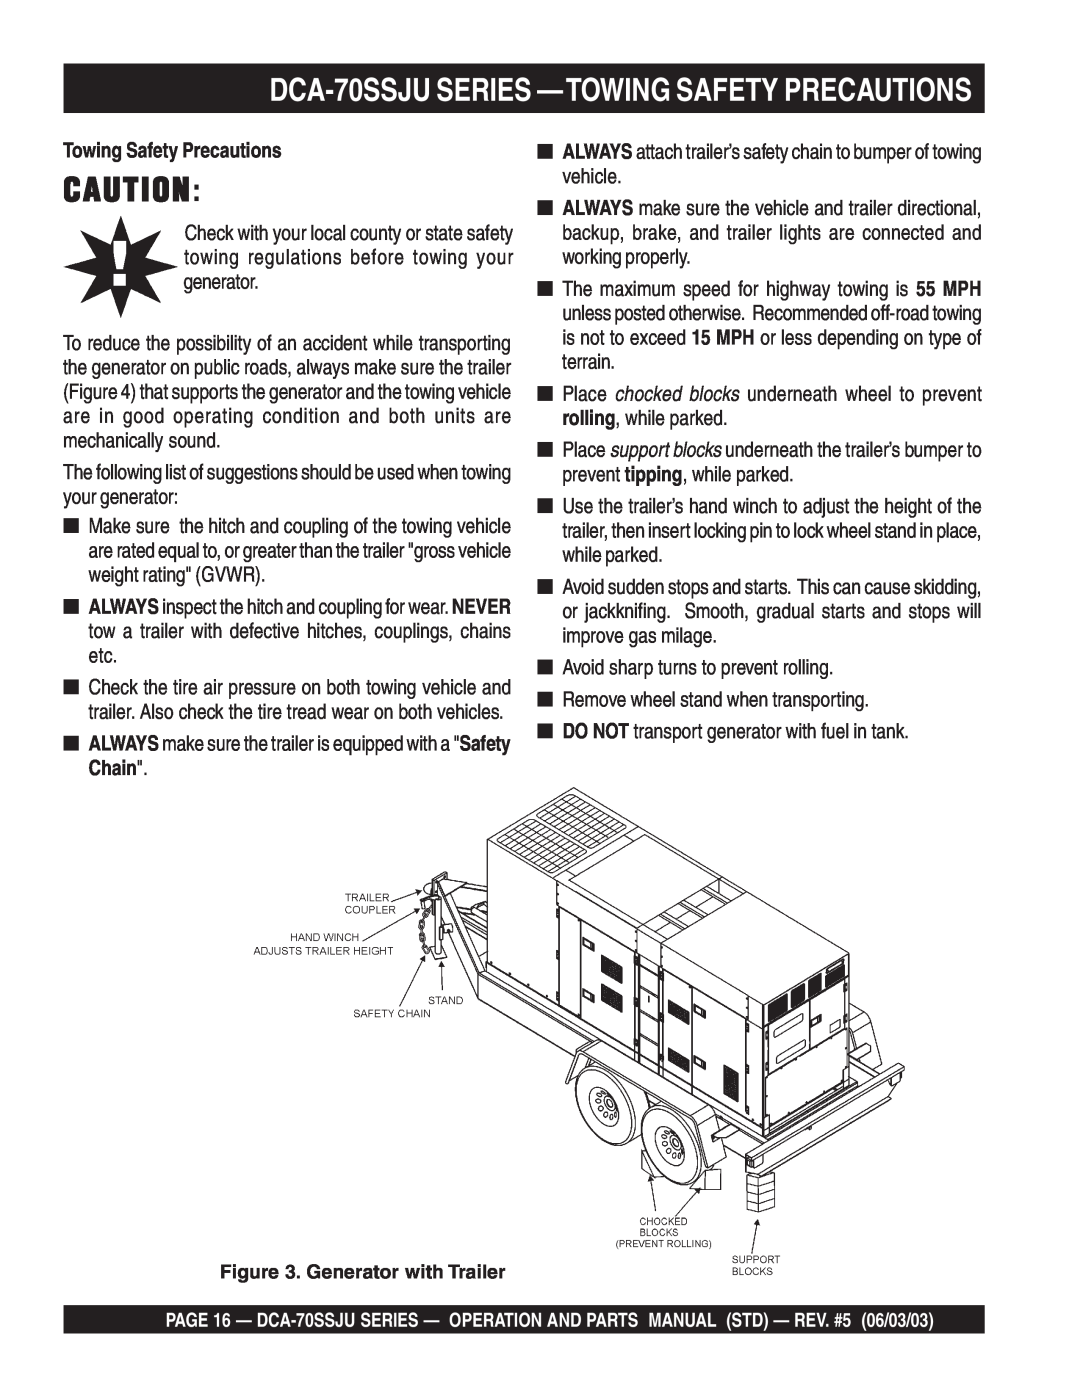 Multiquip operation manual DCA-70SSJUSERIES —TOWINGSAFETY PRECAUTIONS, Towing Safety Precautions 